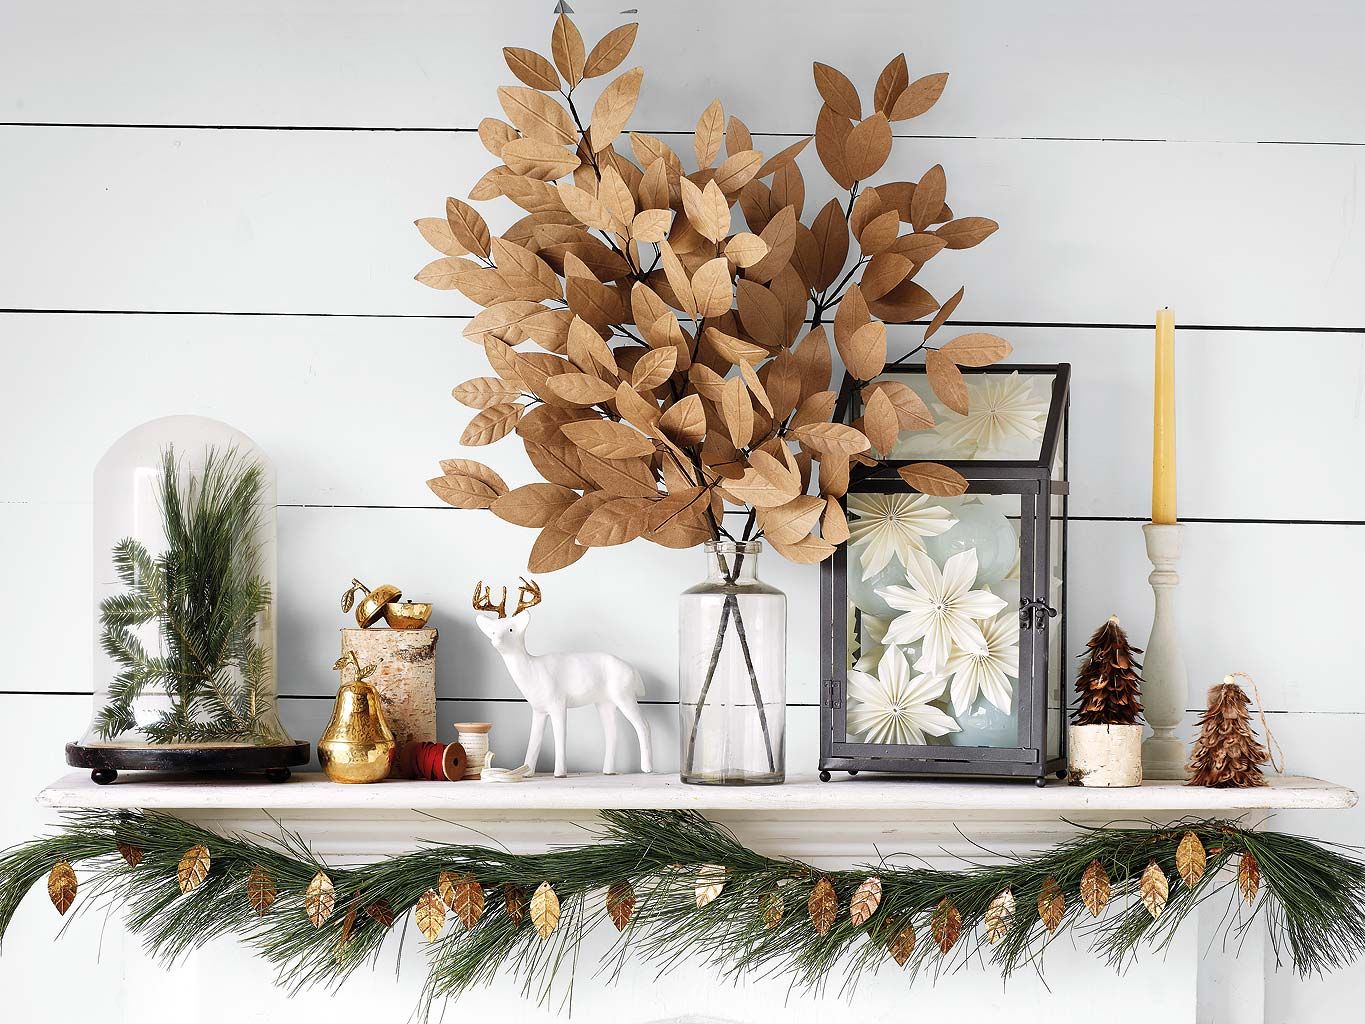 Dynamicoz Navidad sin Rostro de la muñeca de la decoración Creativa de la posición sentada Bosque Mini muñeca Pendiente del árbol de Navidad Astonishing 